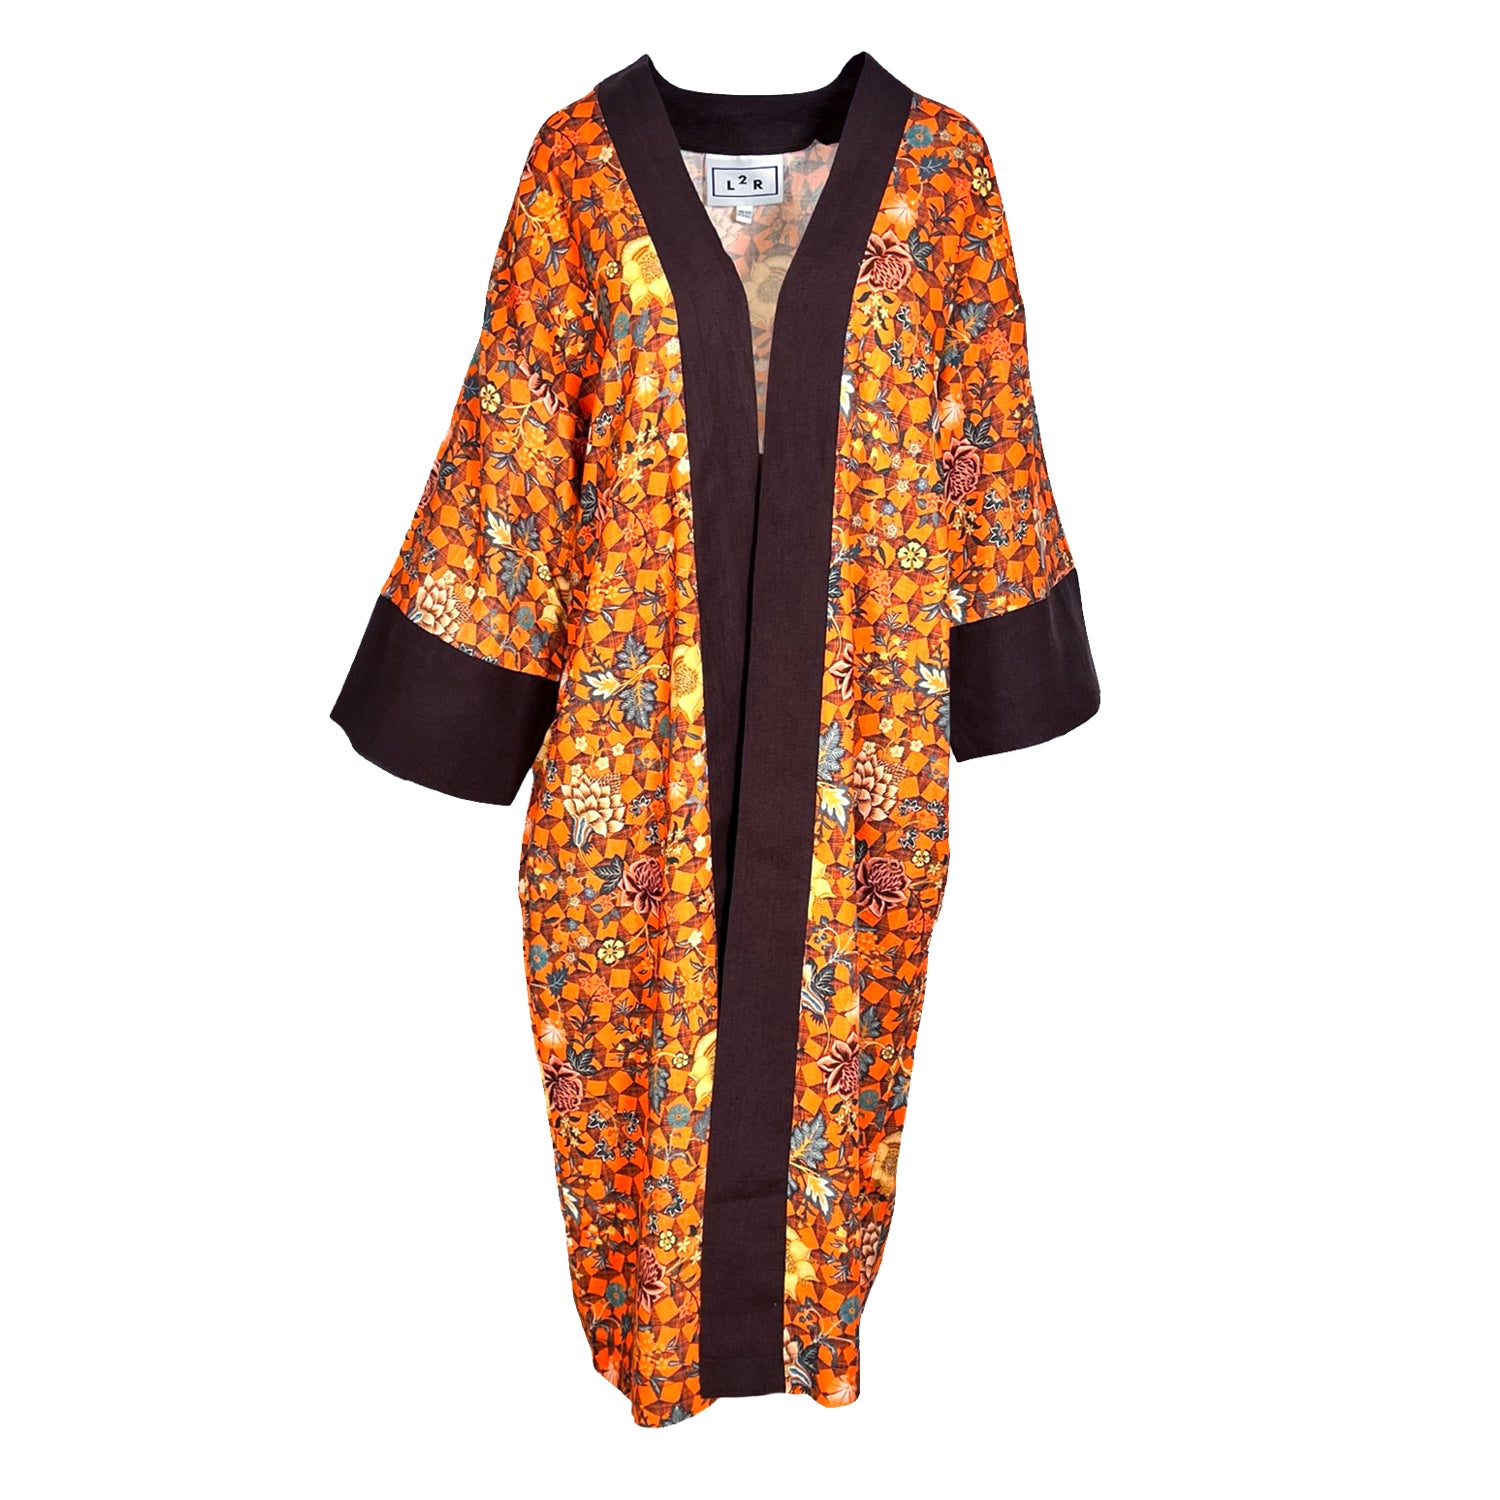 L2r The Label Women's Yellow / Orange / Brown Kaftan Kimono - Orange Floral & Geometric Print